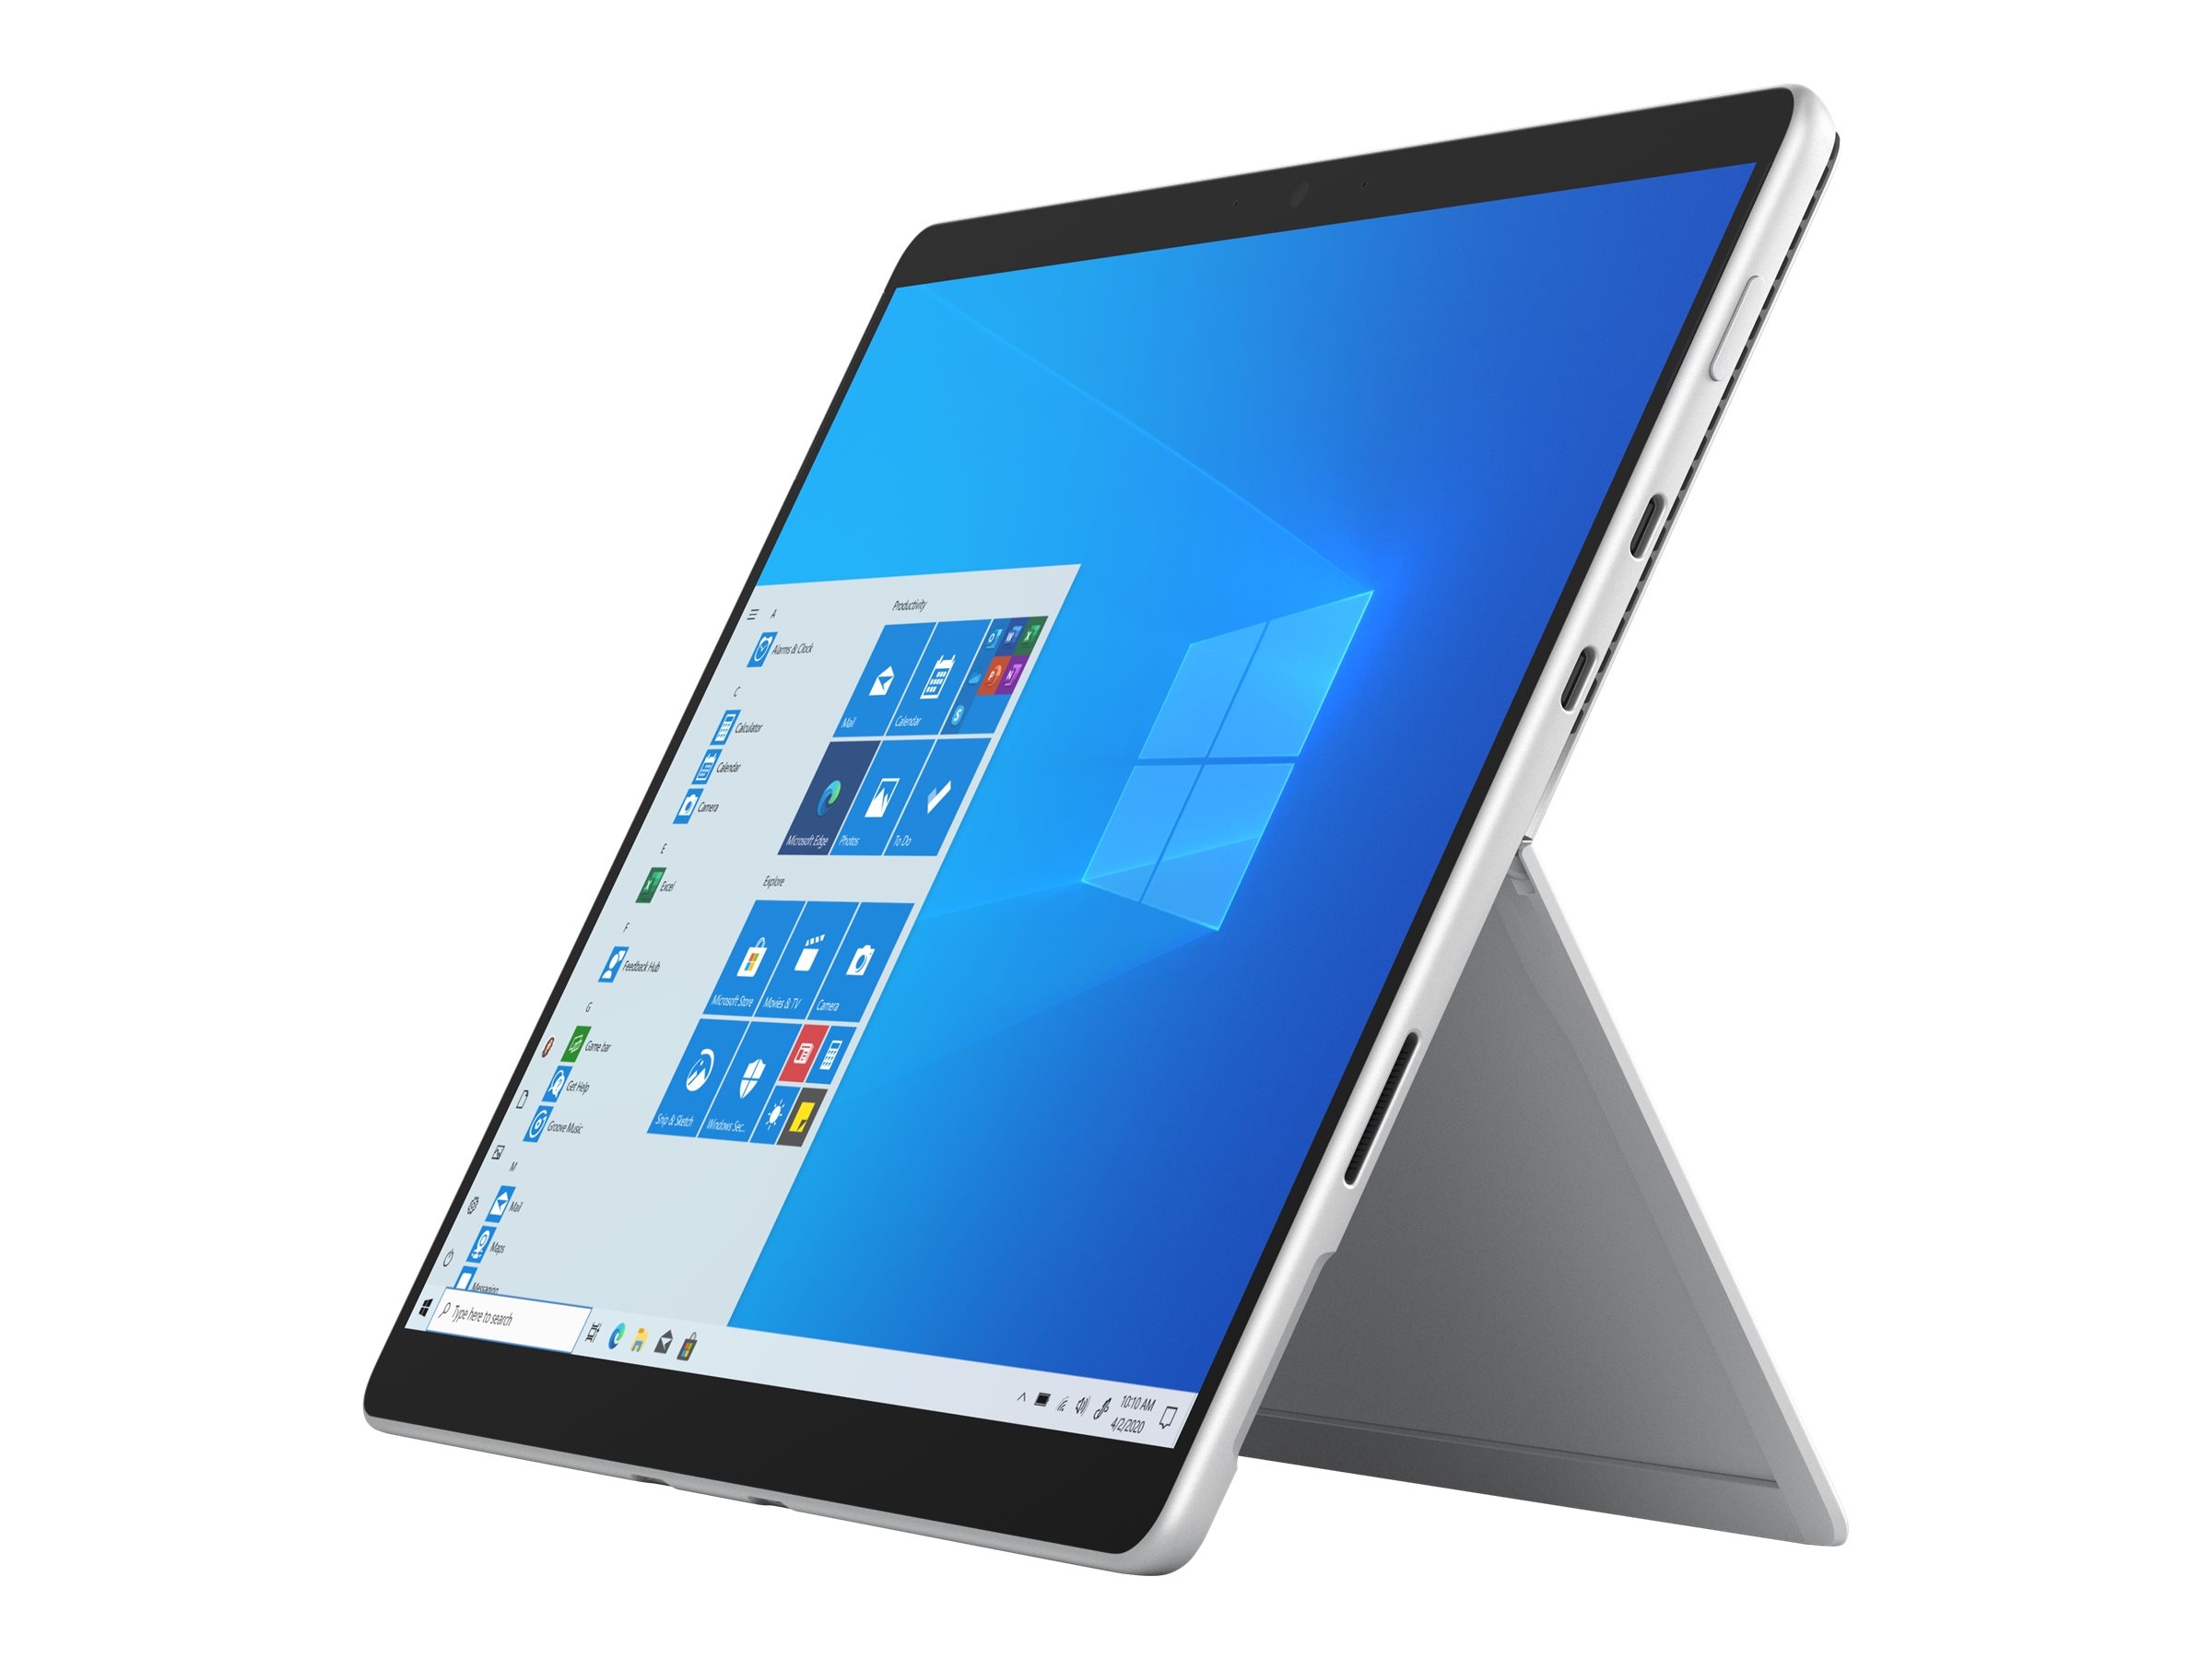 Microsoft Surface Pro 8 - Tablette - Intel Core i5 - 1145G7 / jusqu'à 4.4 GHz - Evo - Win 10 Pro - Carte graphique Intel Iris Xe - 8 Go RAM - 256 Go SSD - 13" écran tactile 2880 x 1920 @ 120 Hz - Wi-Fi 6 - 4G LTE-A - platine - commercial - EIG-00020 - Ordinateurs portables